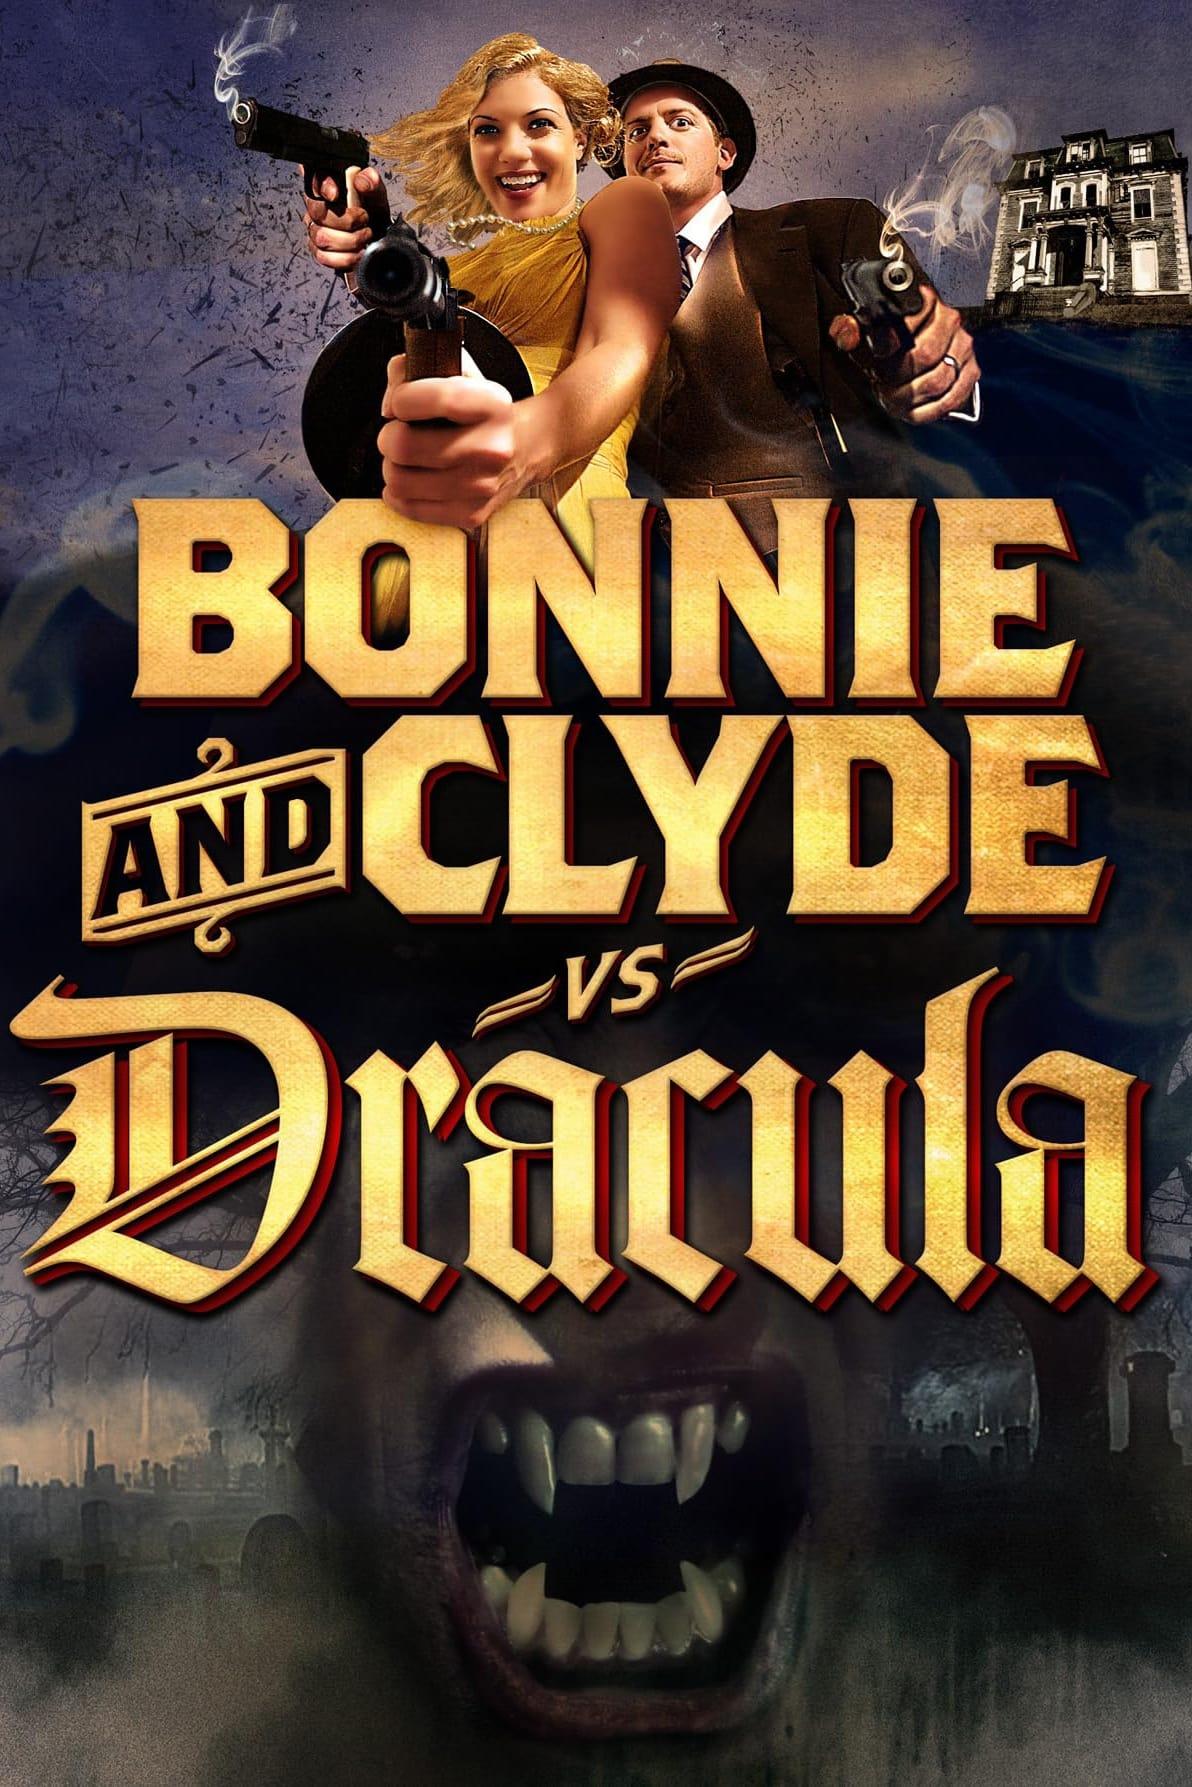 Bonnie & Clyde vs. Dracula poster